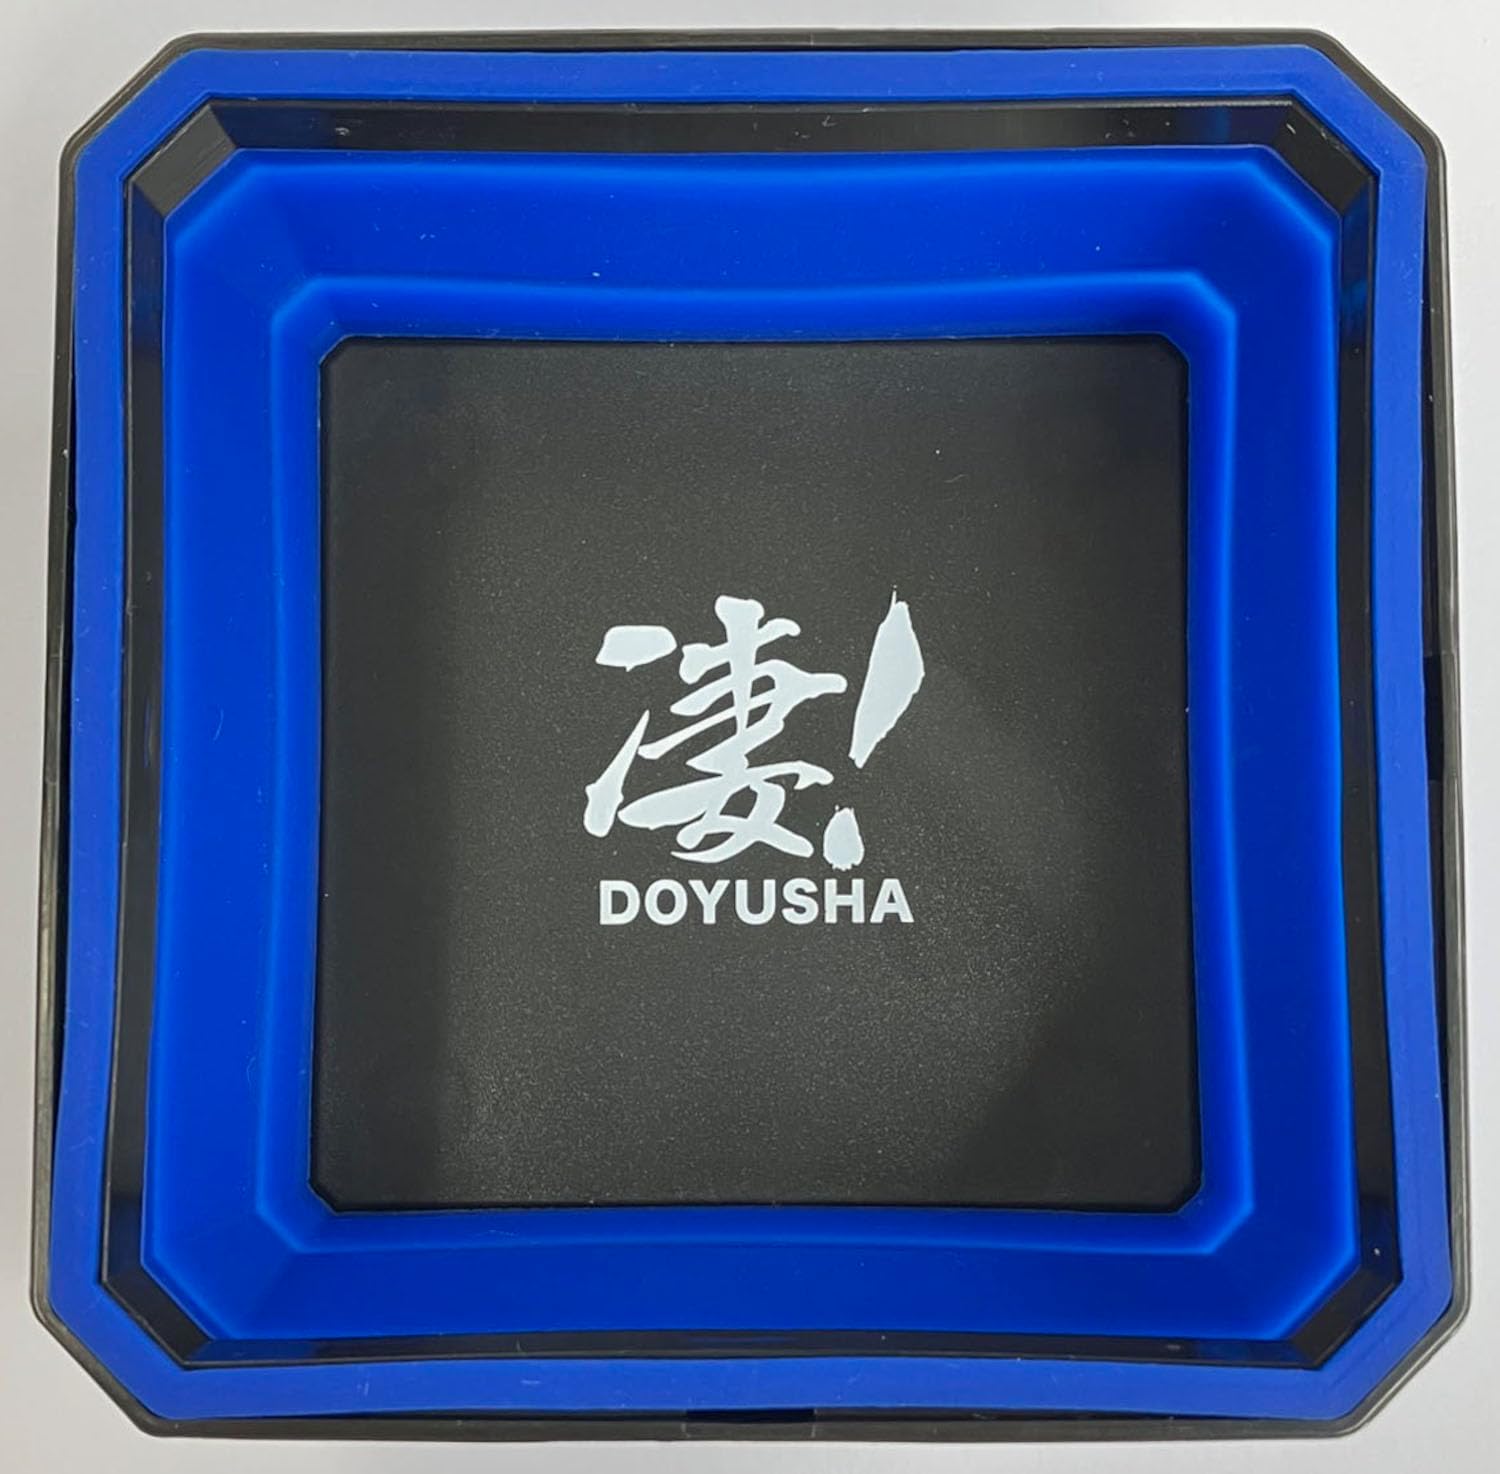 Doyusha Awesome Hobby Silicone Parts Tray Blue - BanzaiHobby